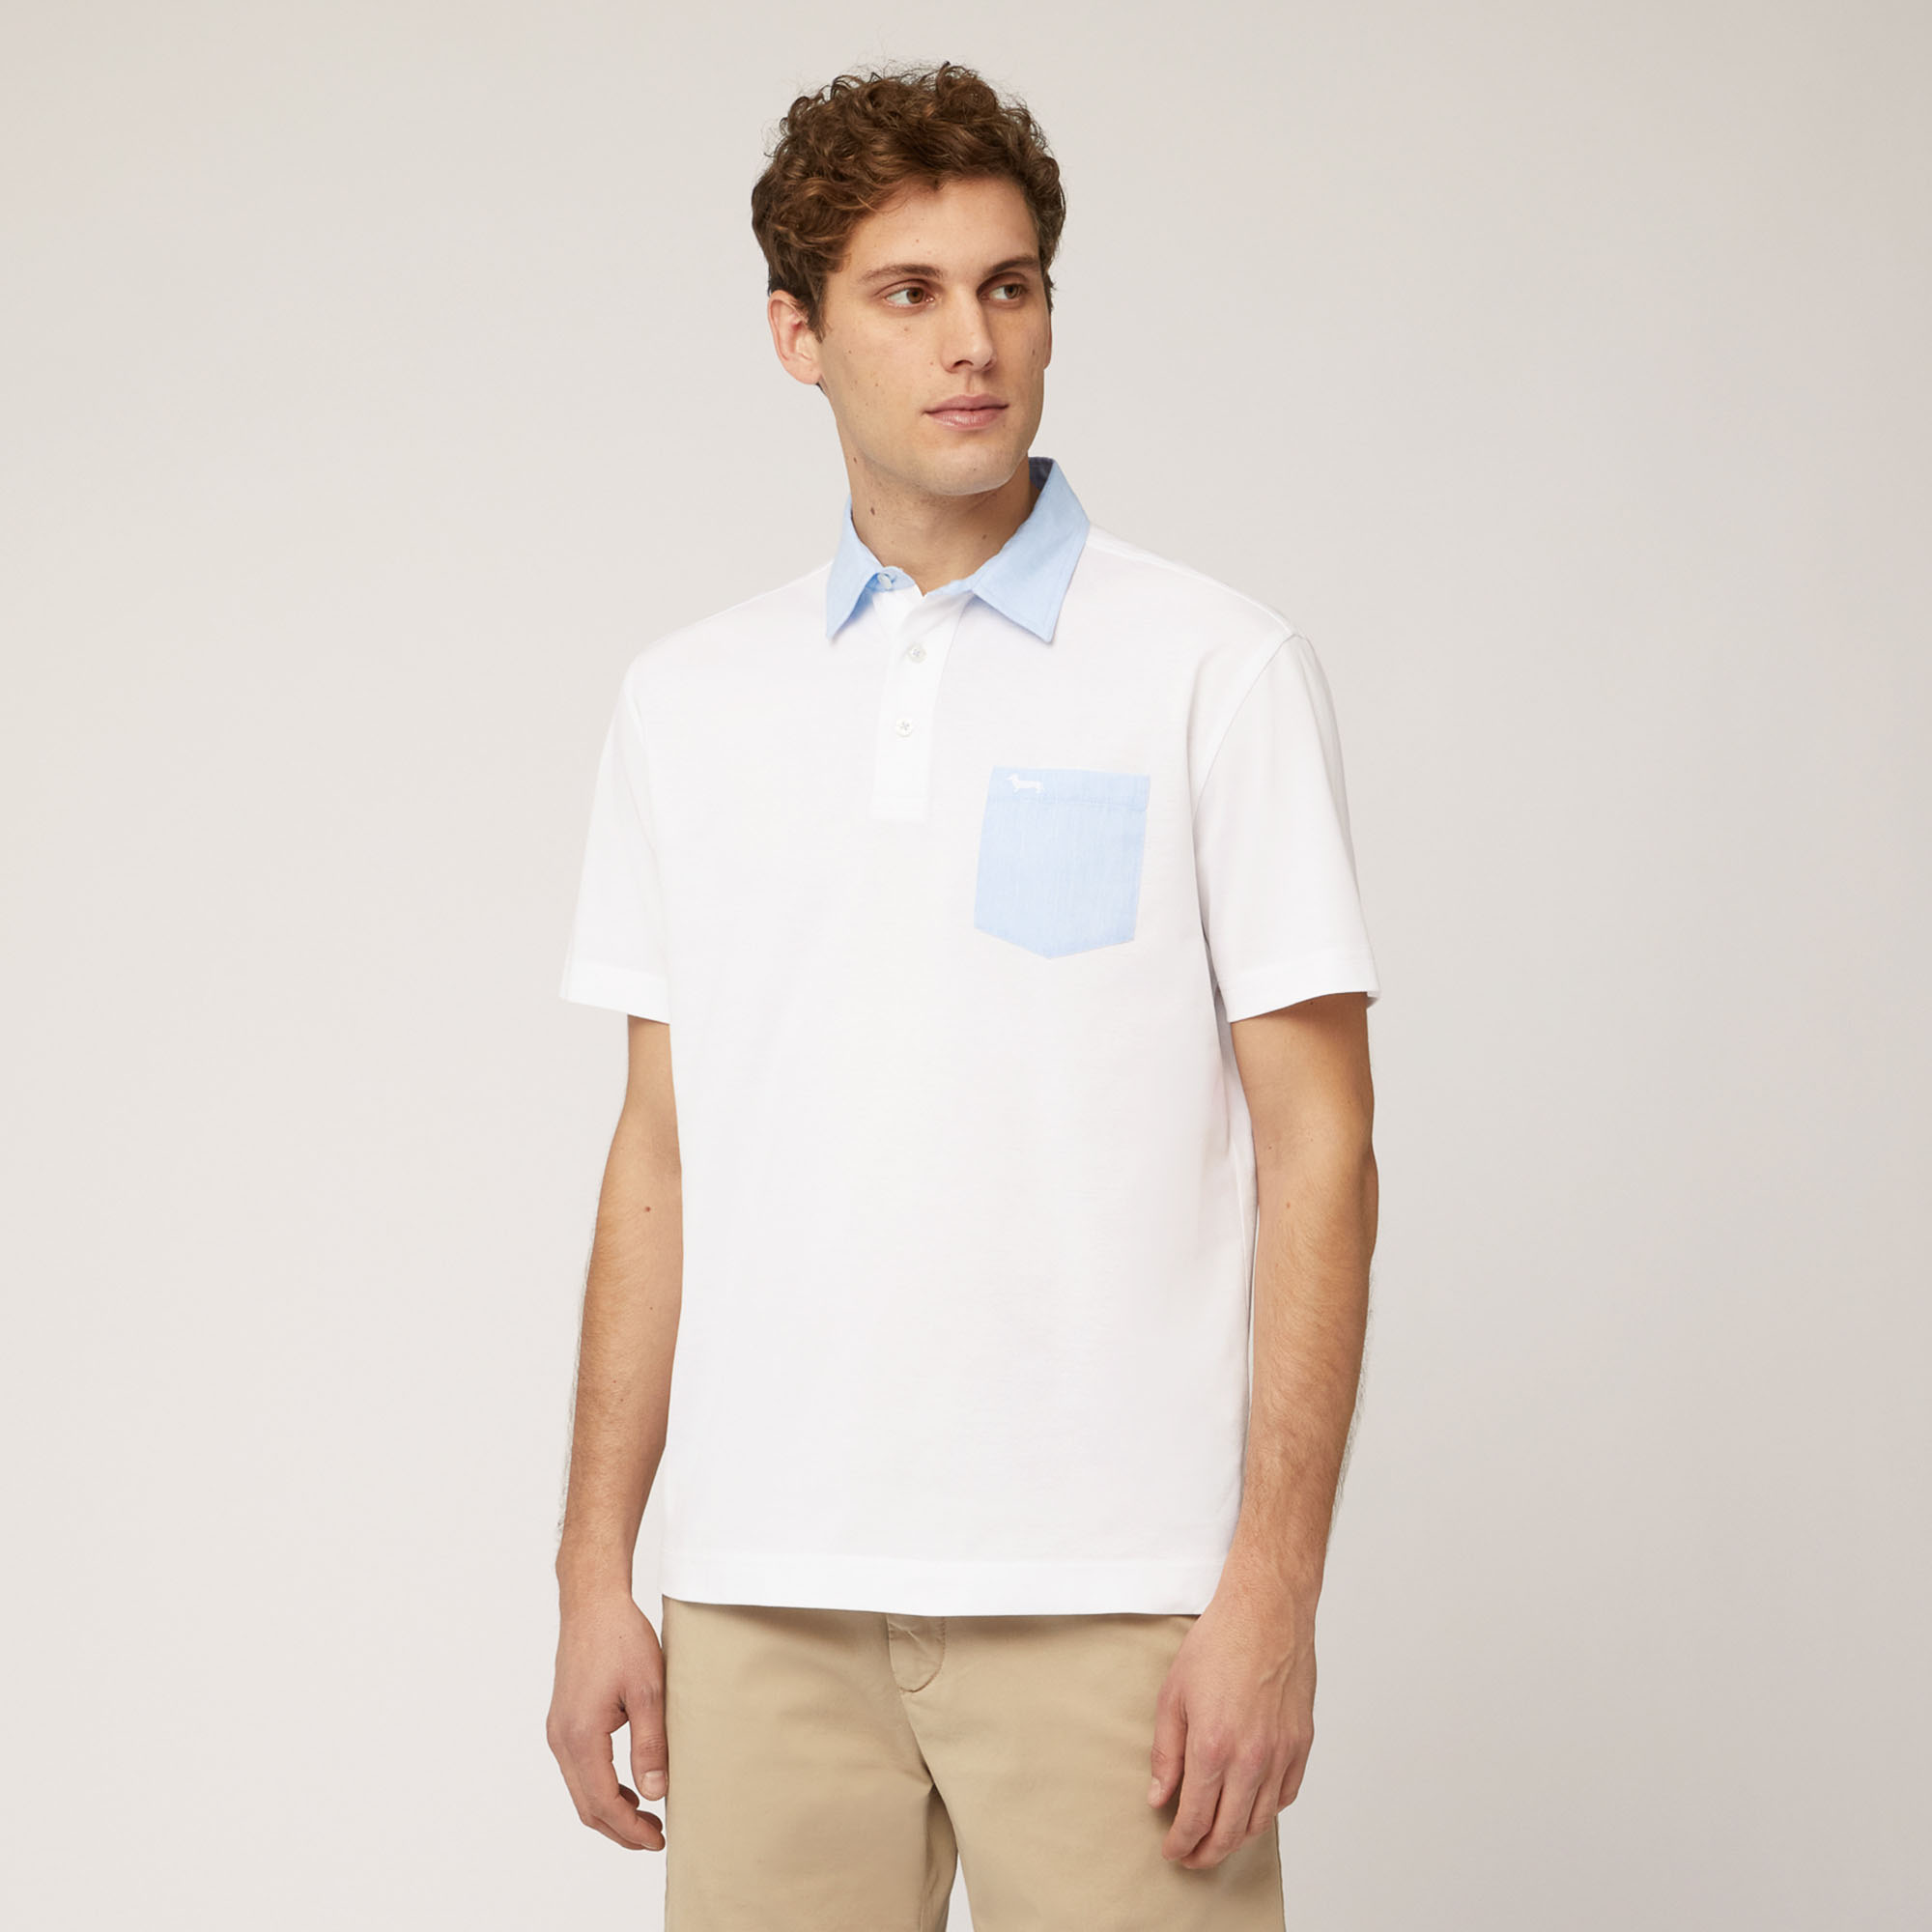 Poloshirt mit Brusttasche, Weiß, large image number 0